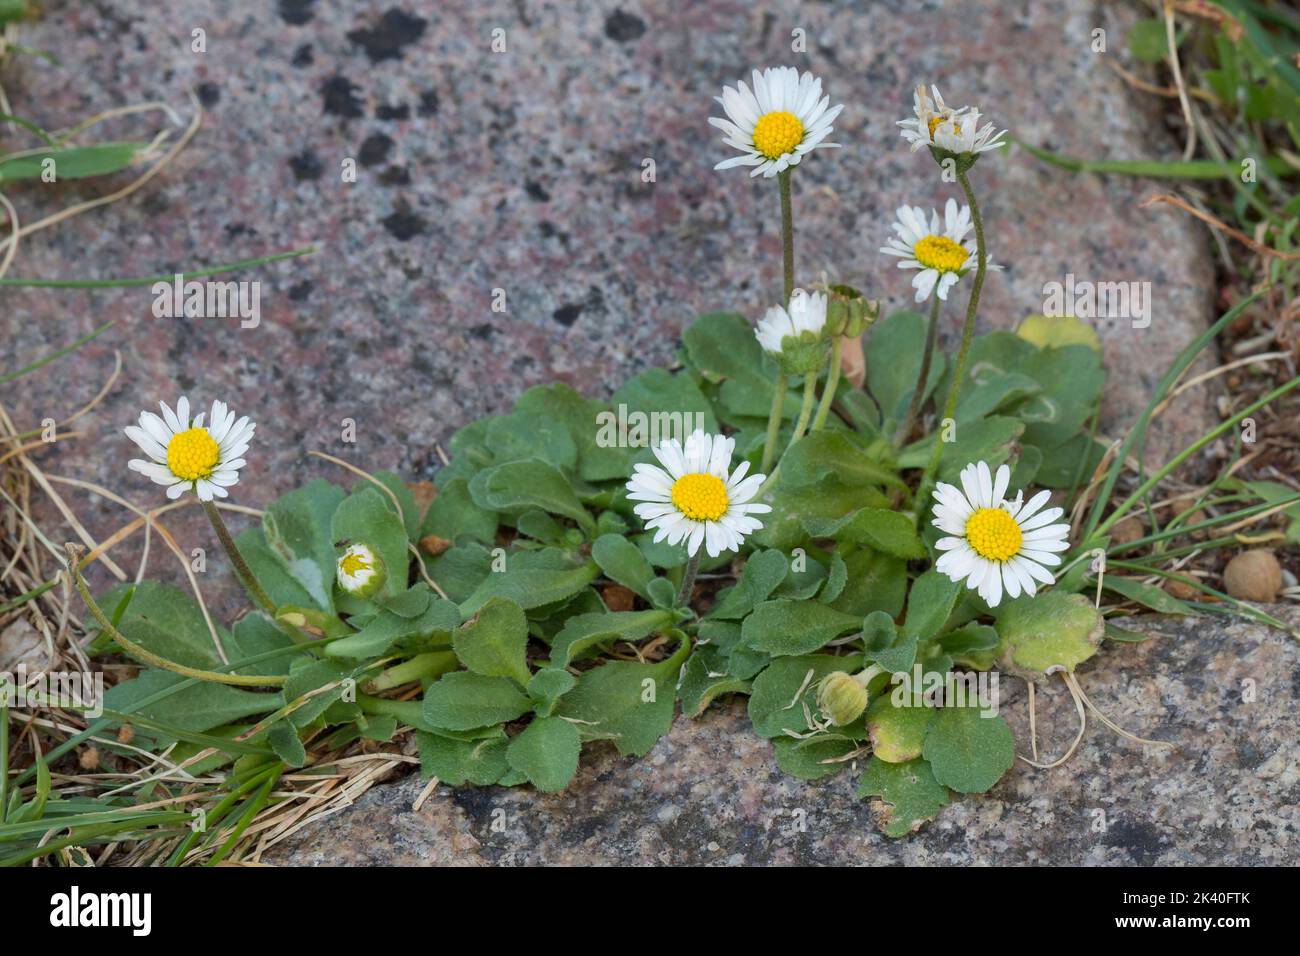 Pâquerette commune, pâquerette de pelouse, pâquerette anglaise (Bellis perennis), sur un trottoir, Allemagne Banque D'Images